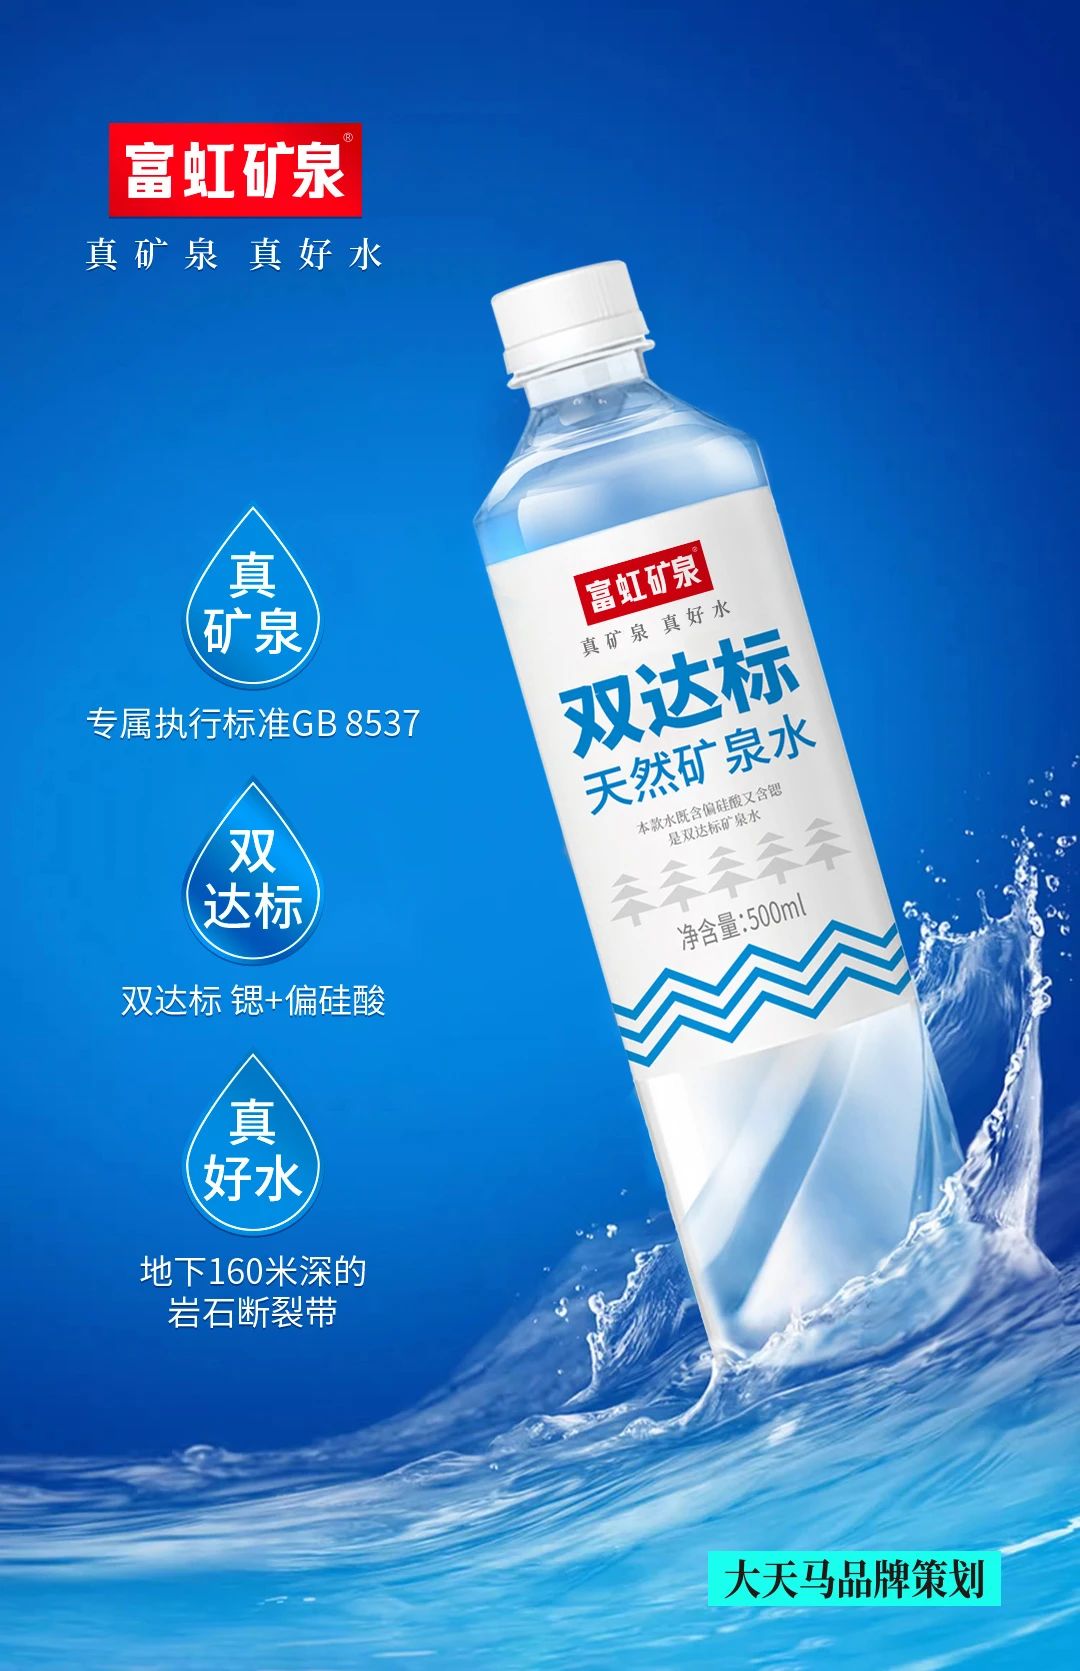 上海大天马X富虹矿泉水品牌策划